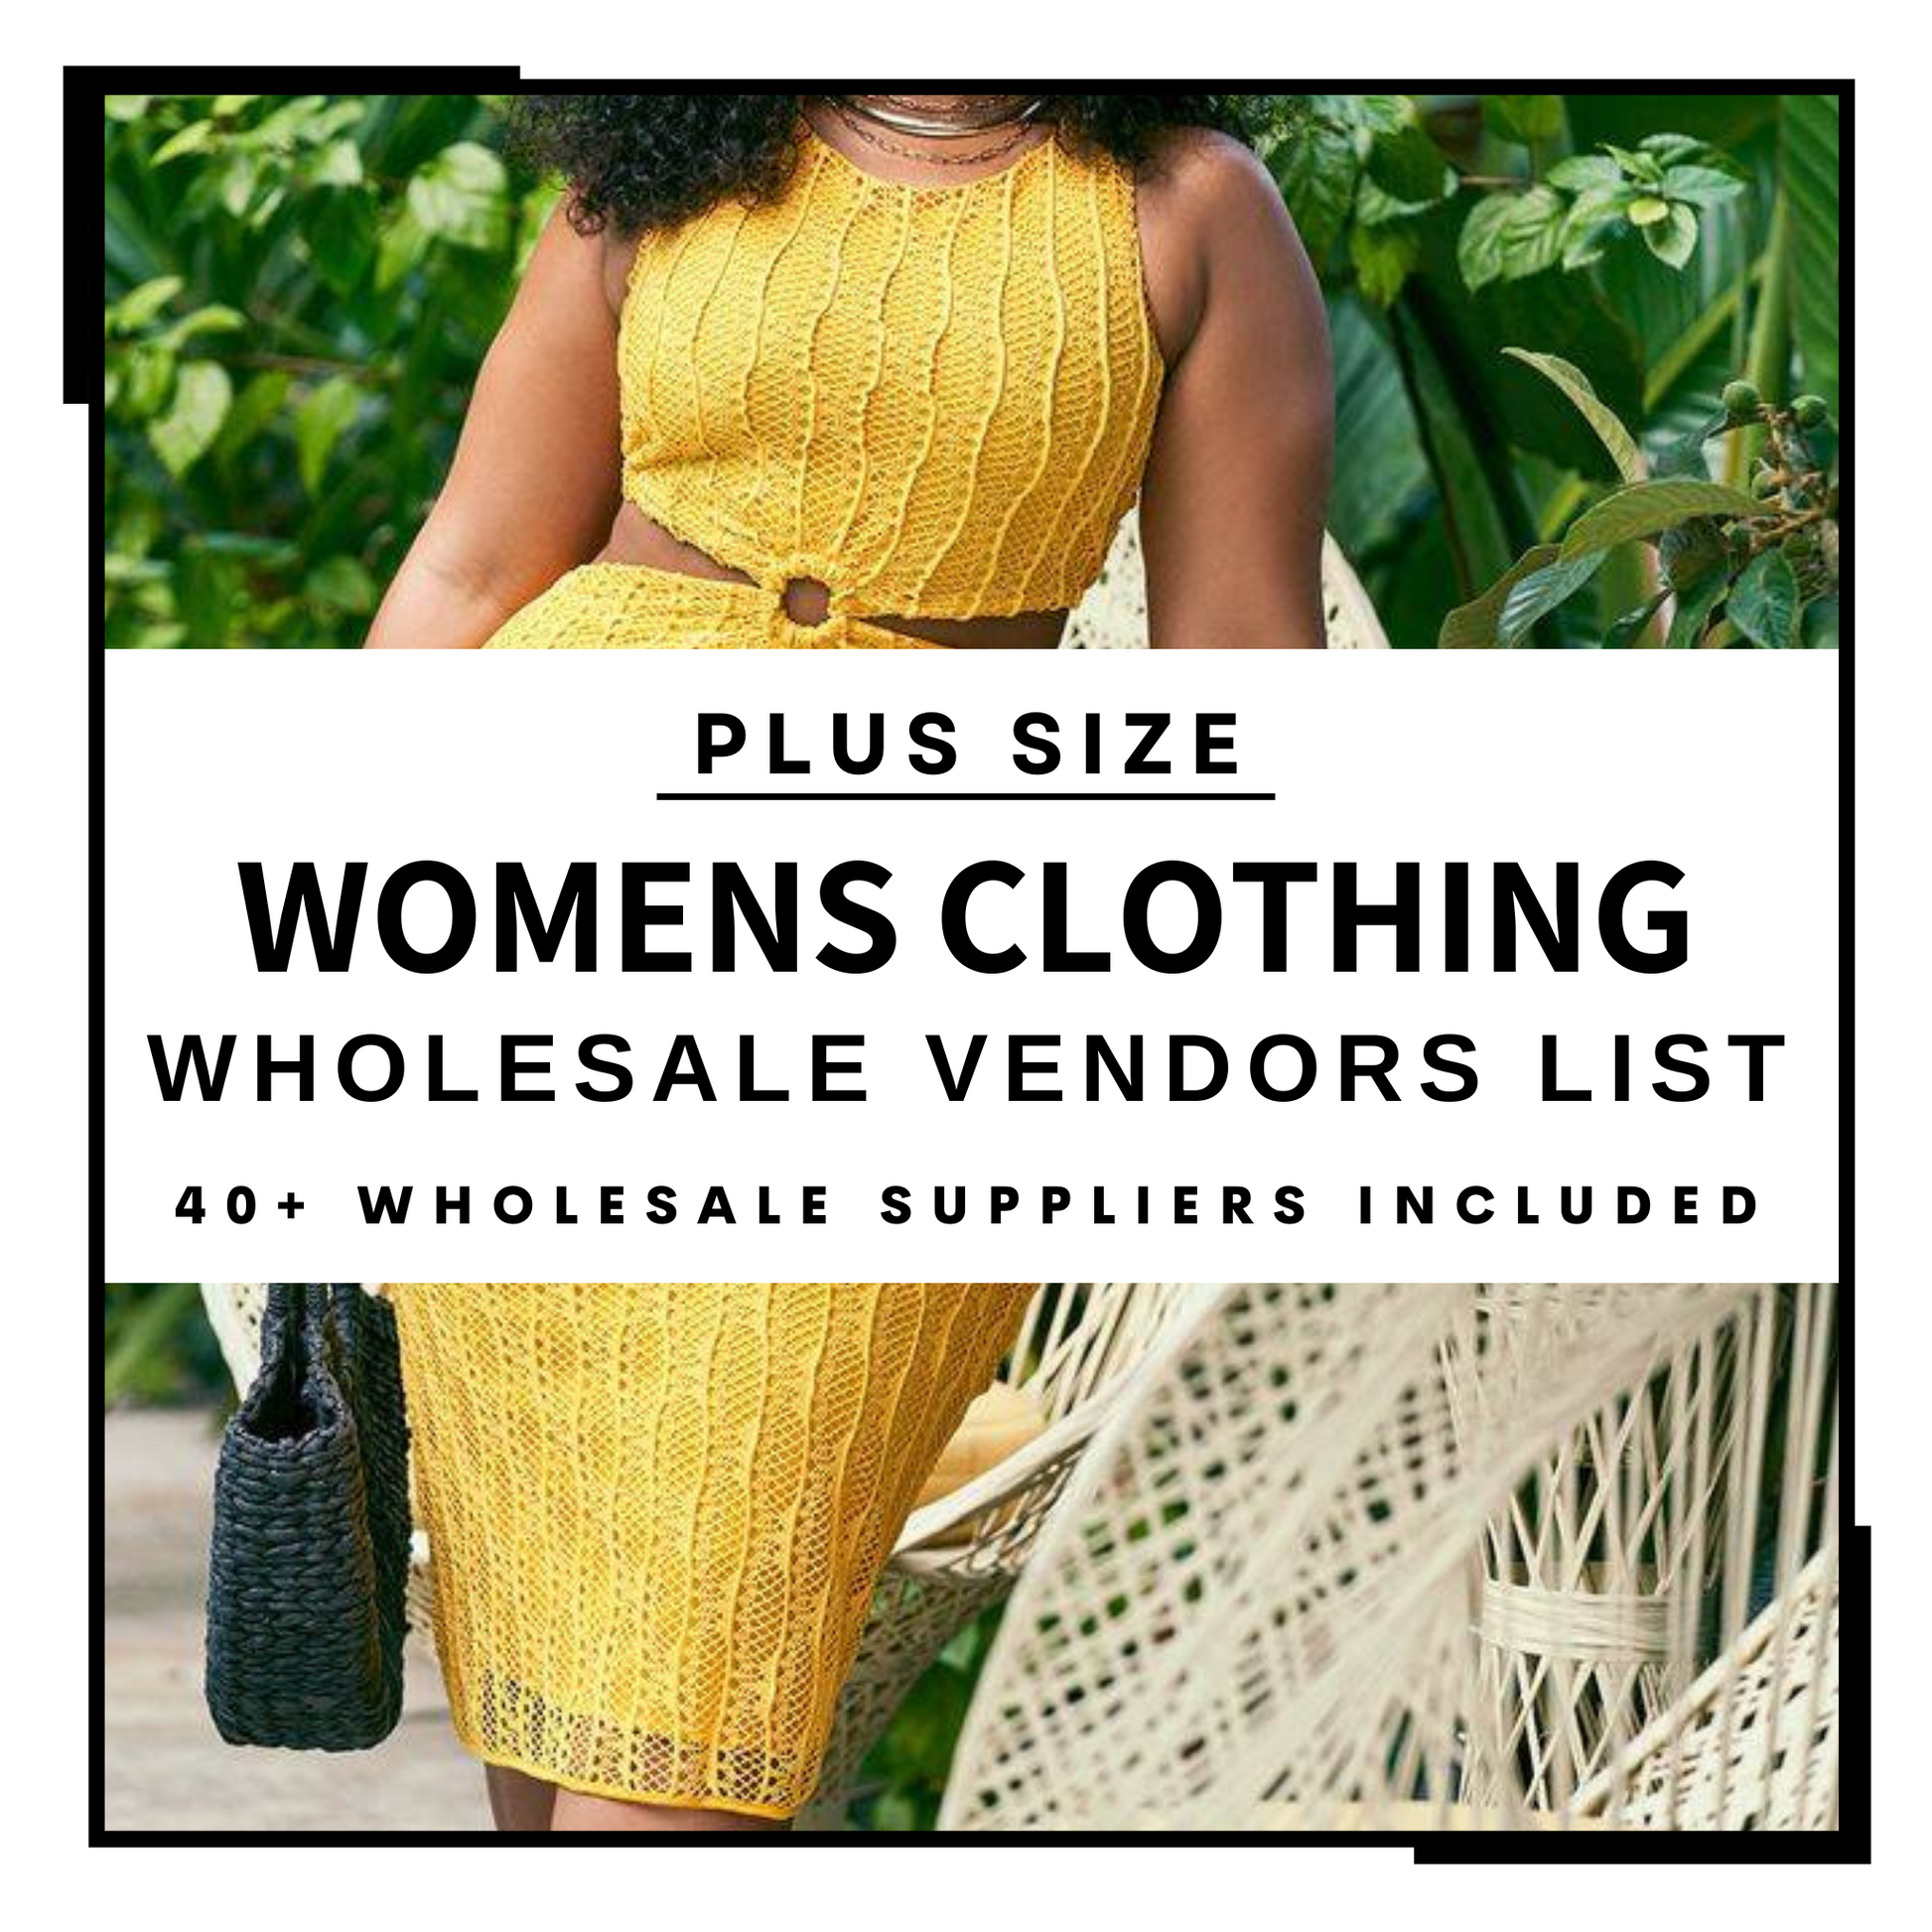 Wholesale Women's Clothing - Large sizes and plus sizes